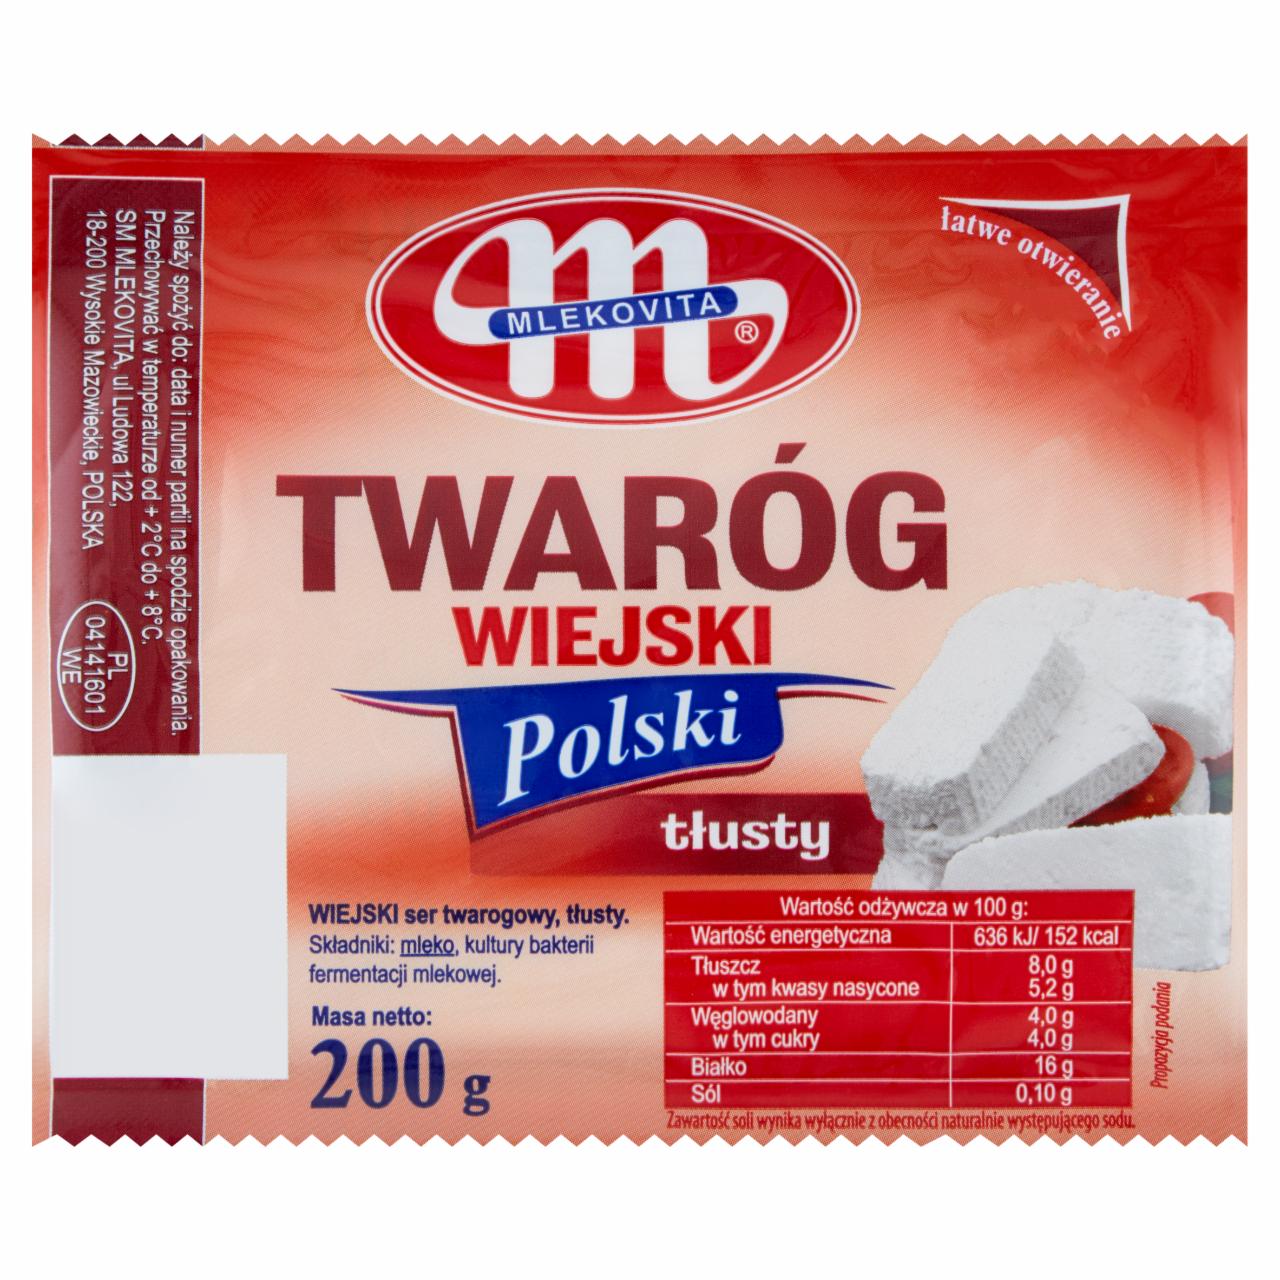 Zdjęcia - Mlekovita Twaróg wiejski polski tłusty 200 g